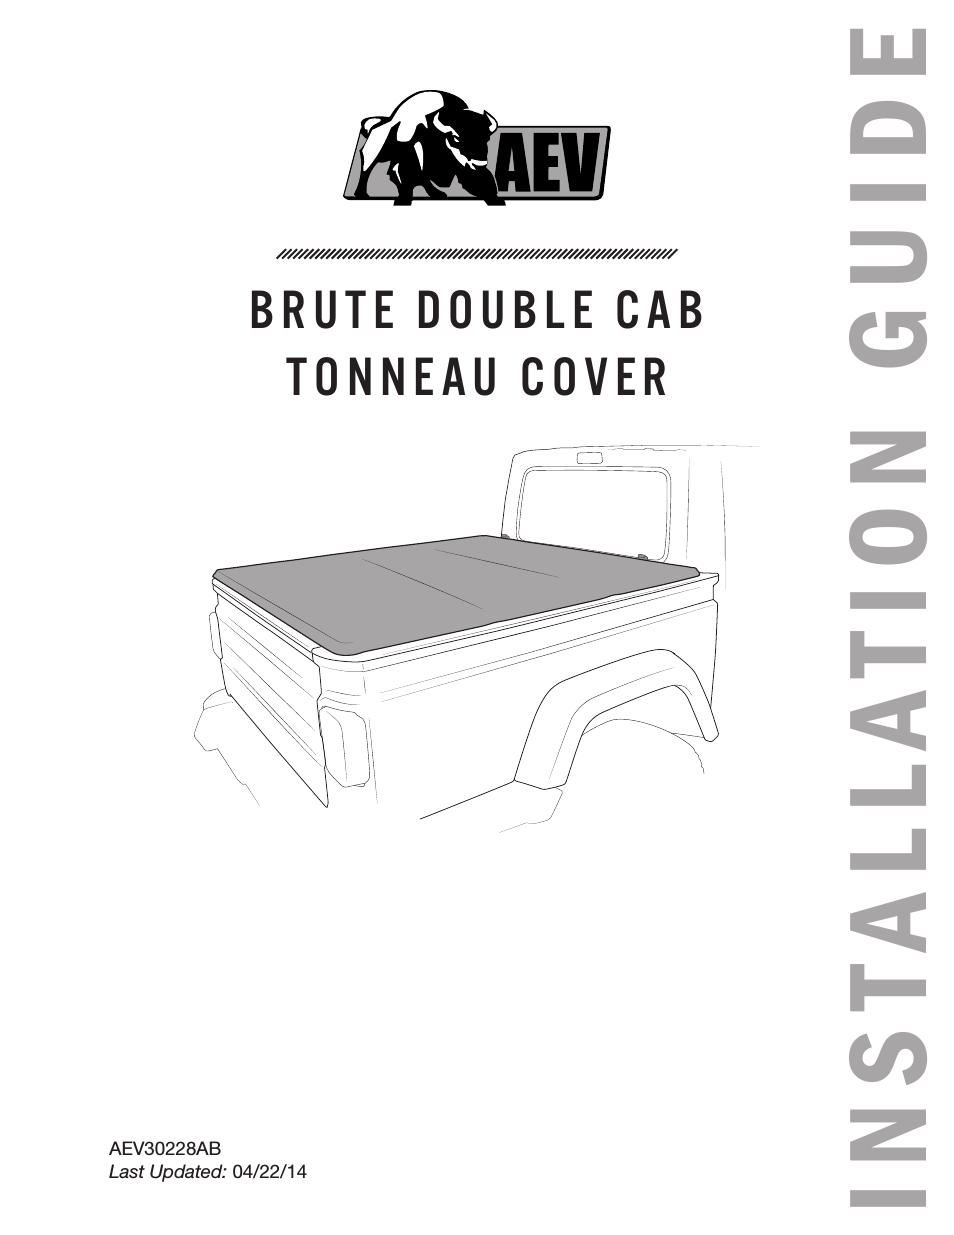 Brute Double Cab Tonneau Cover